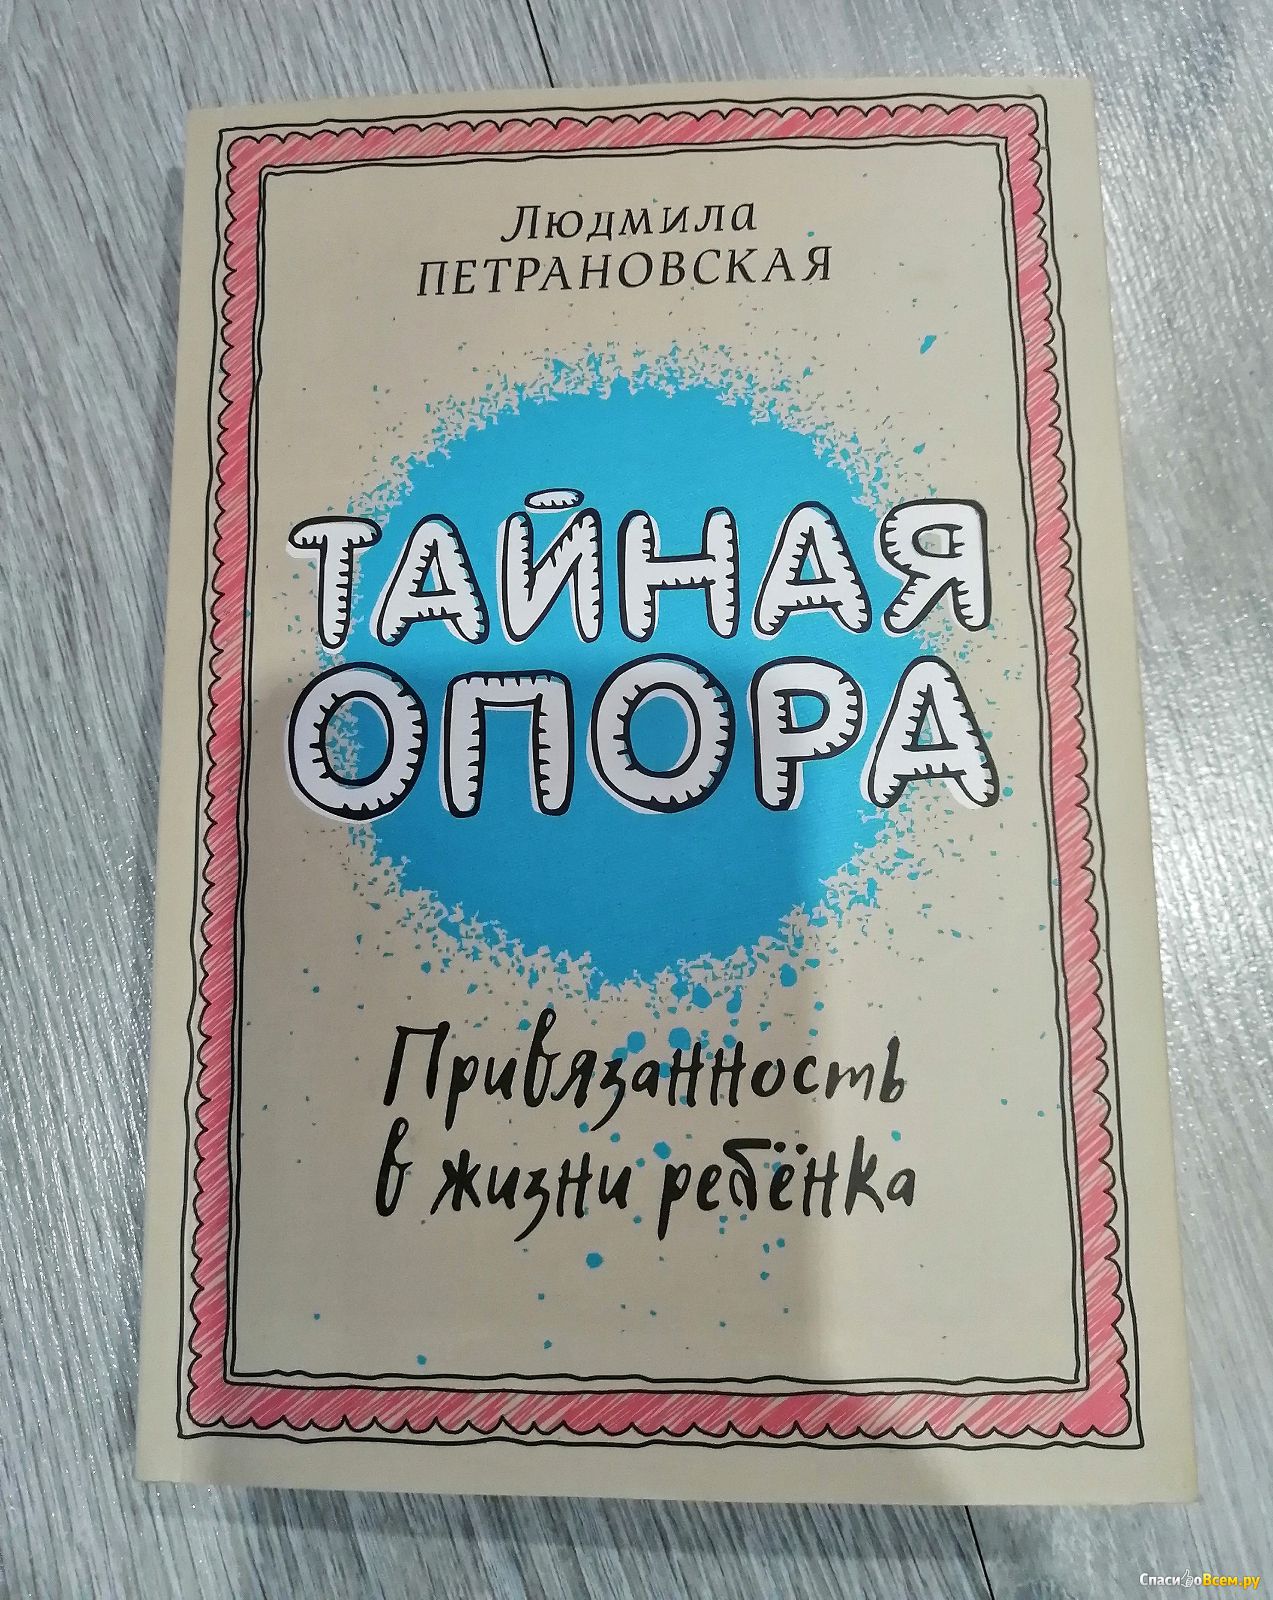 Книга петрановской тайны опоры. Петрановская привязанность в жизни.